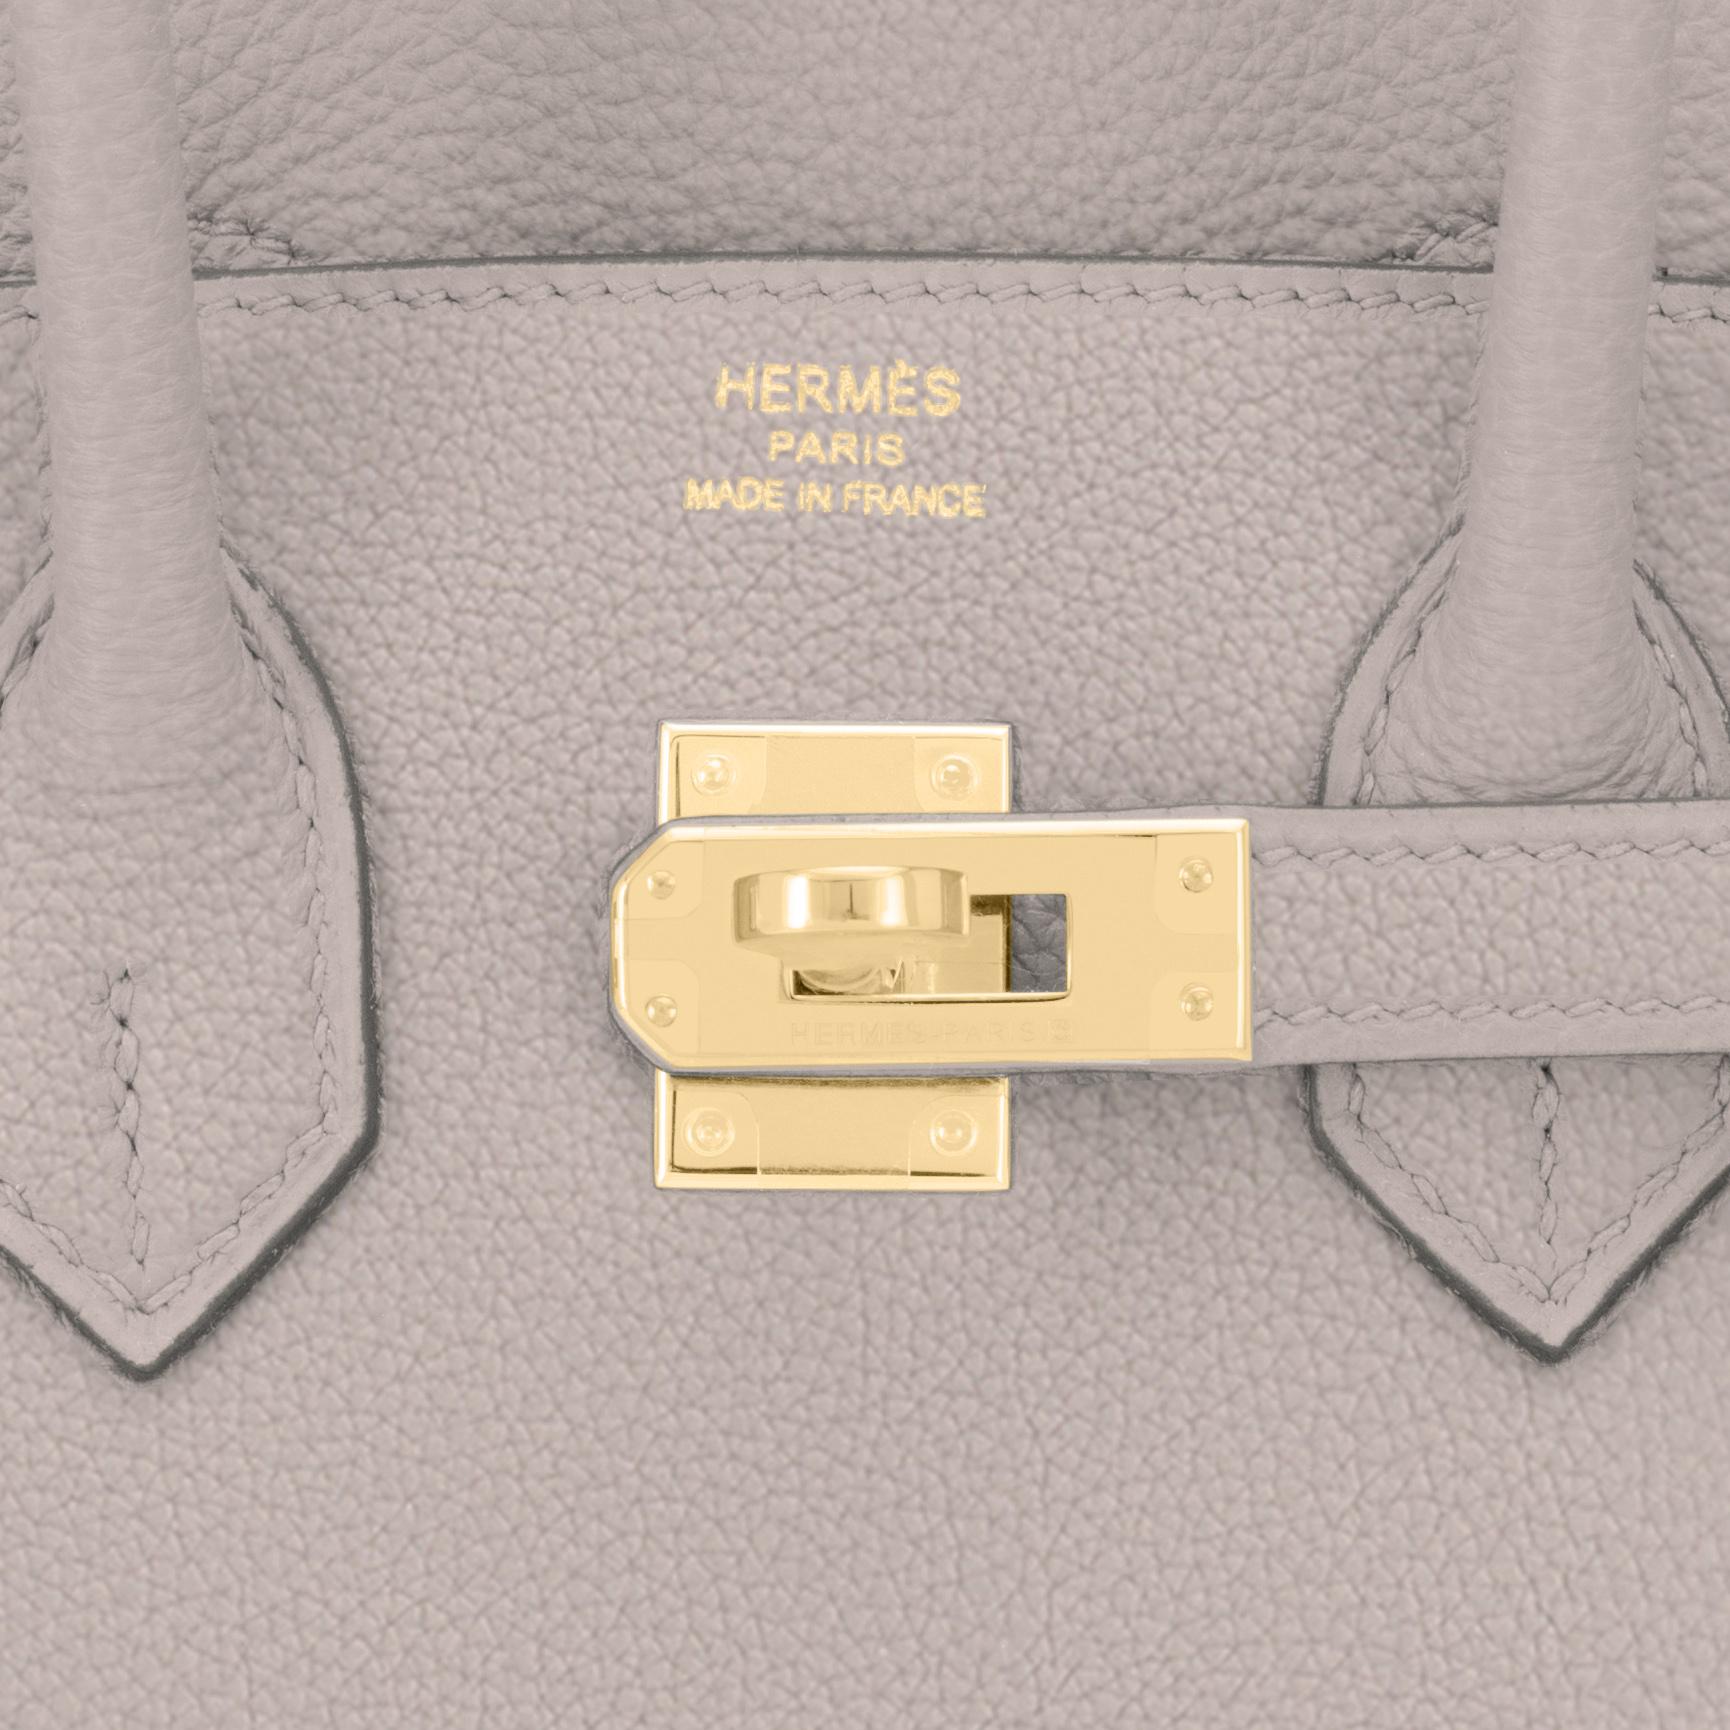 Hermes Birkin 25cm Gris Asphalte Grey Beige Bag Gold Hardware Y Stamp, 2020 1